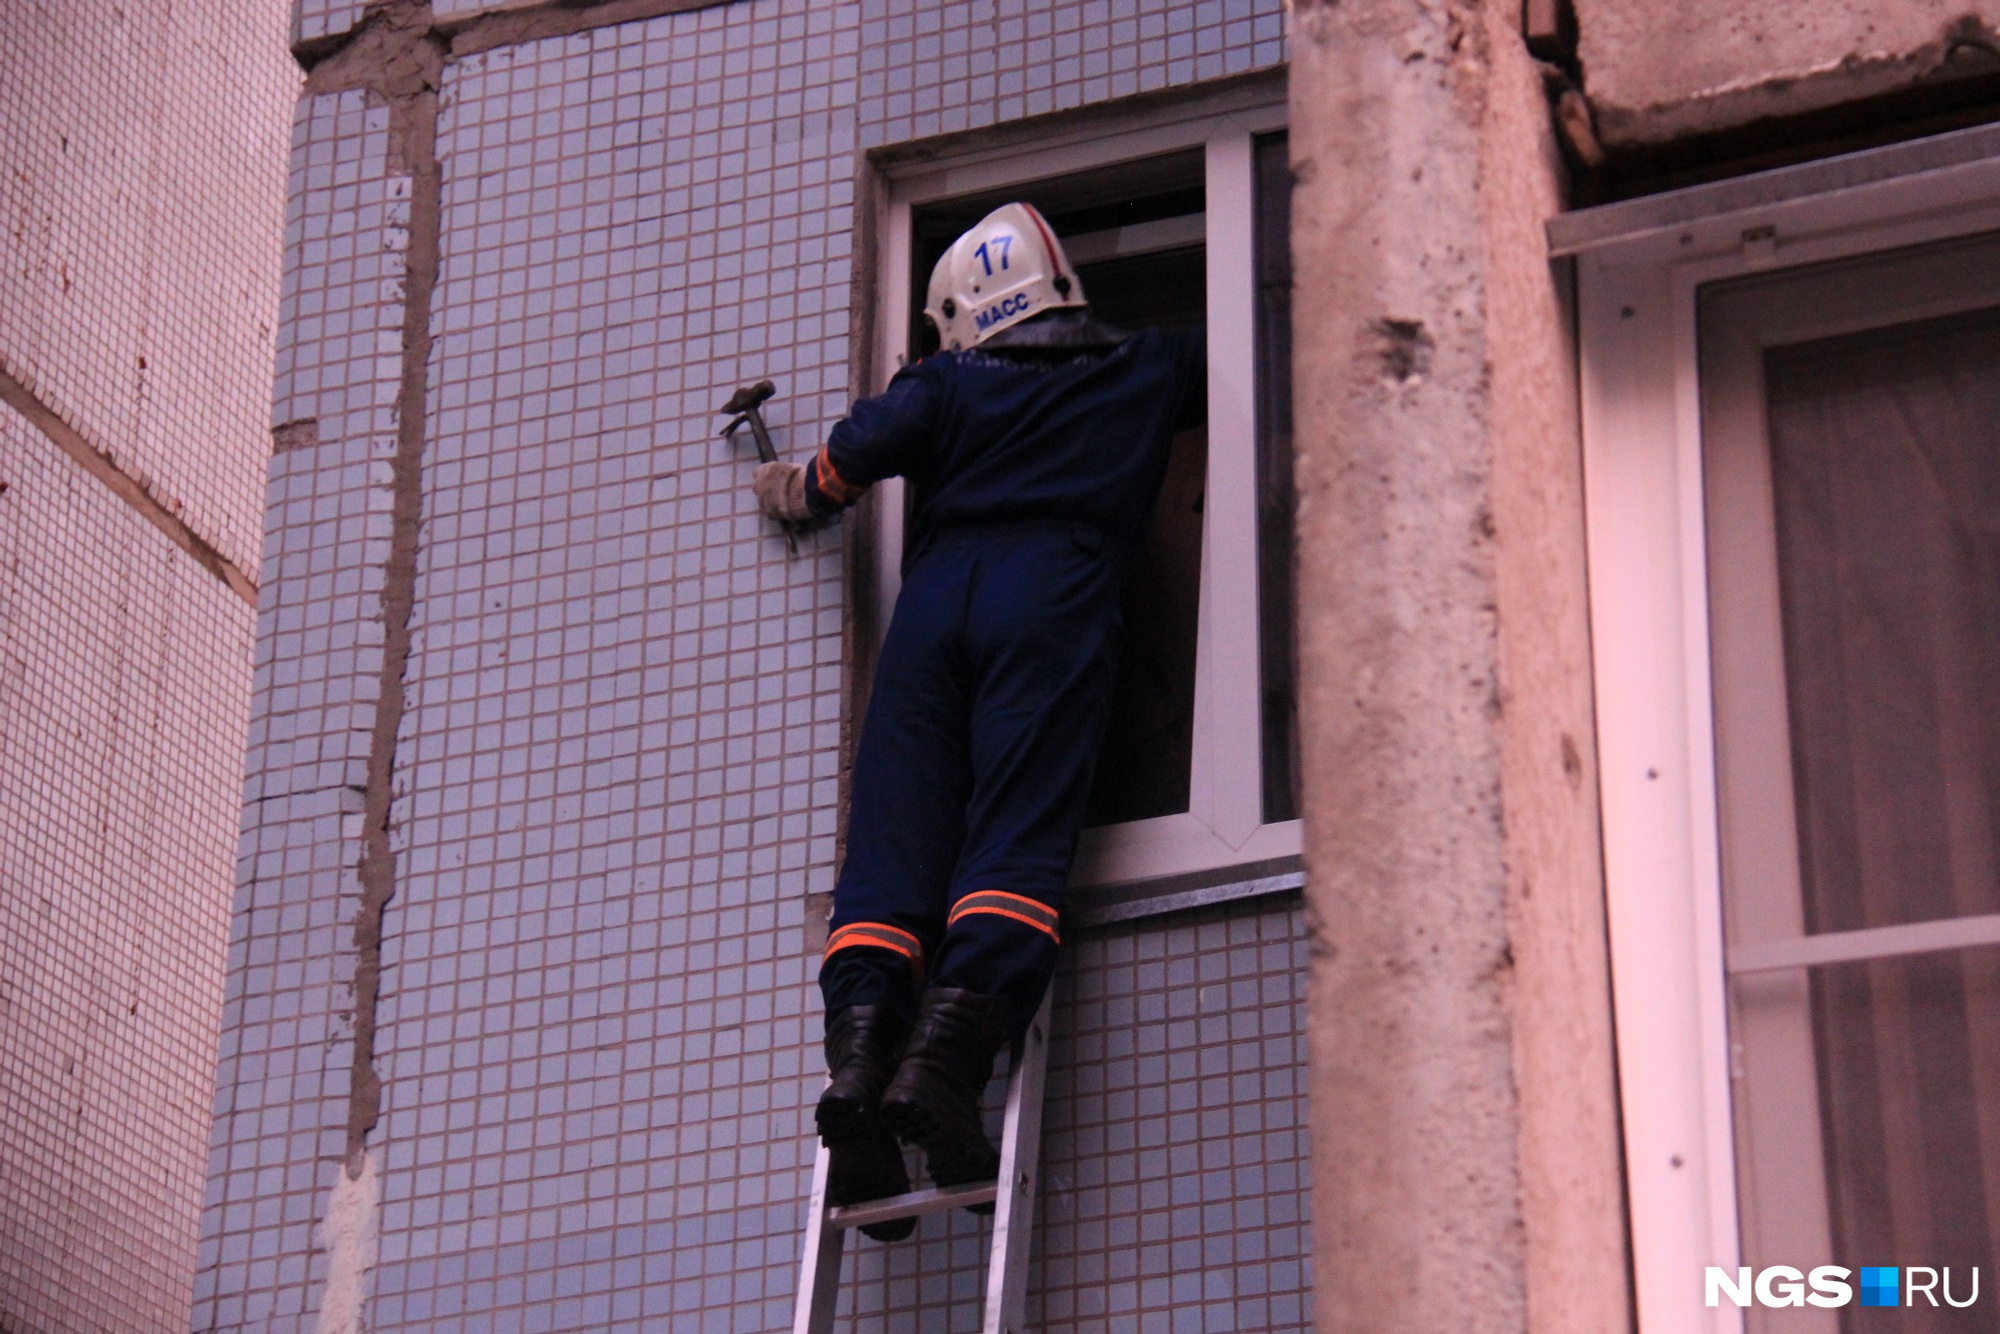 Спасатели МАСС пытались попасть в дом через окно 